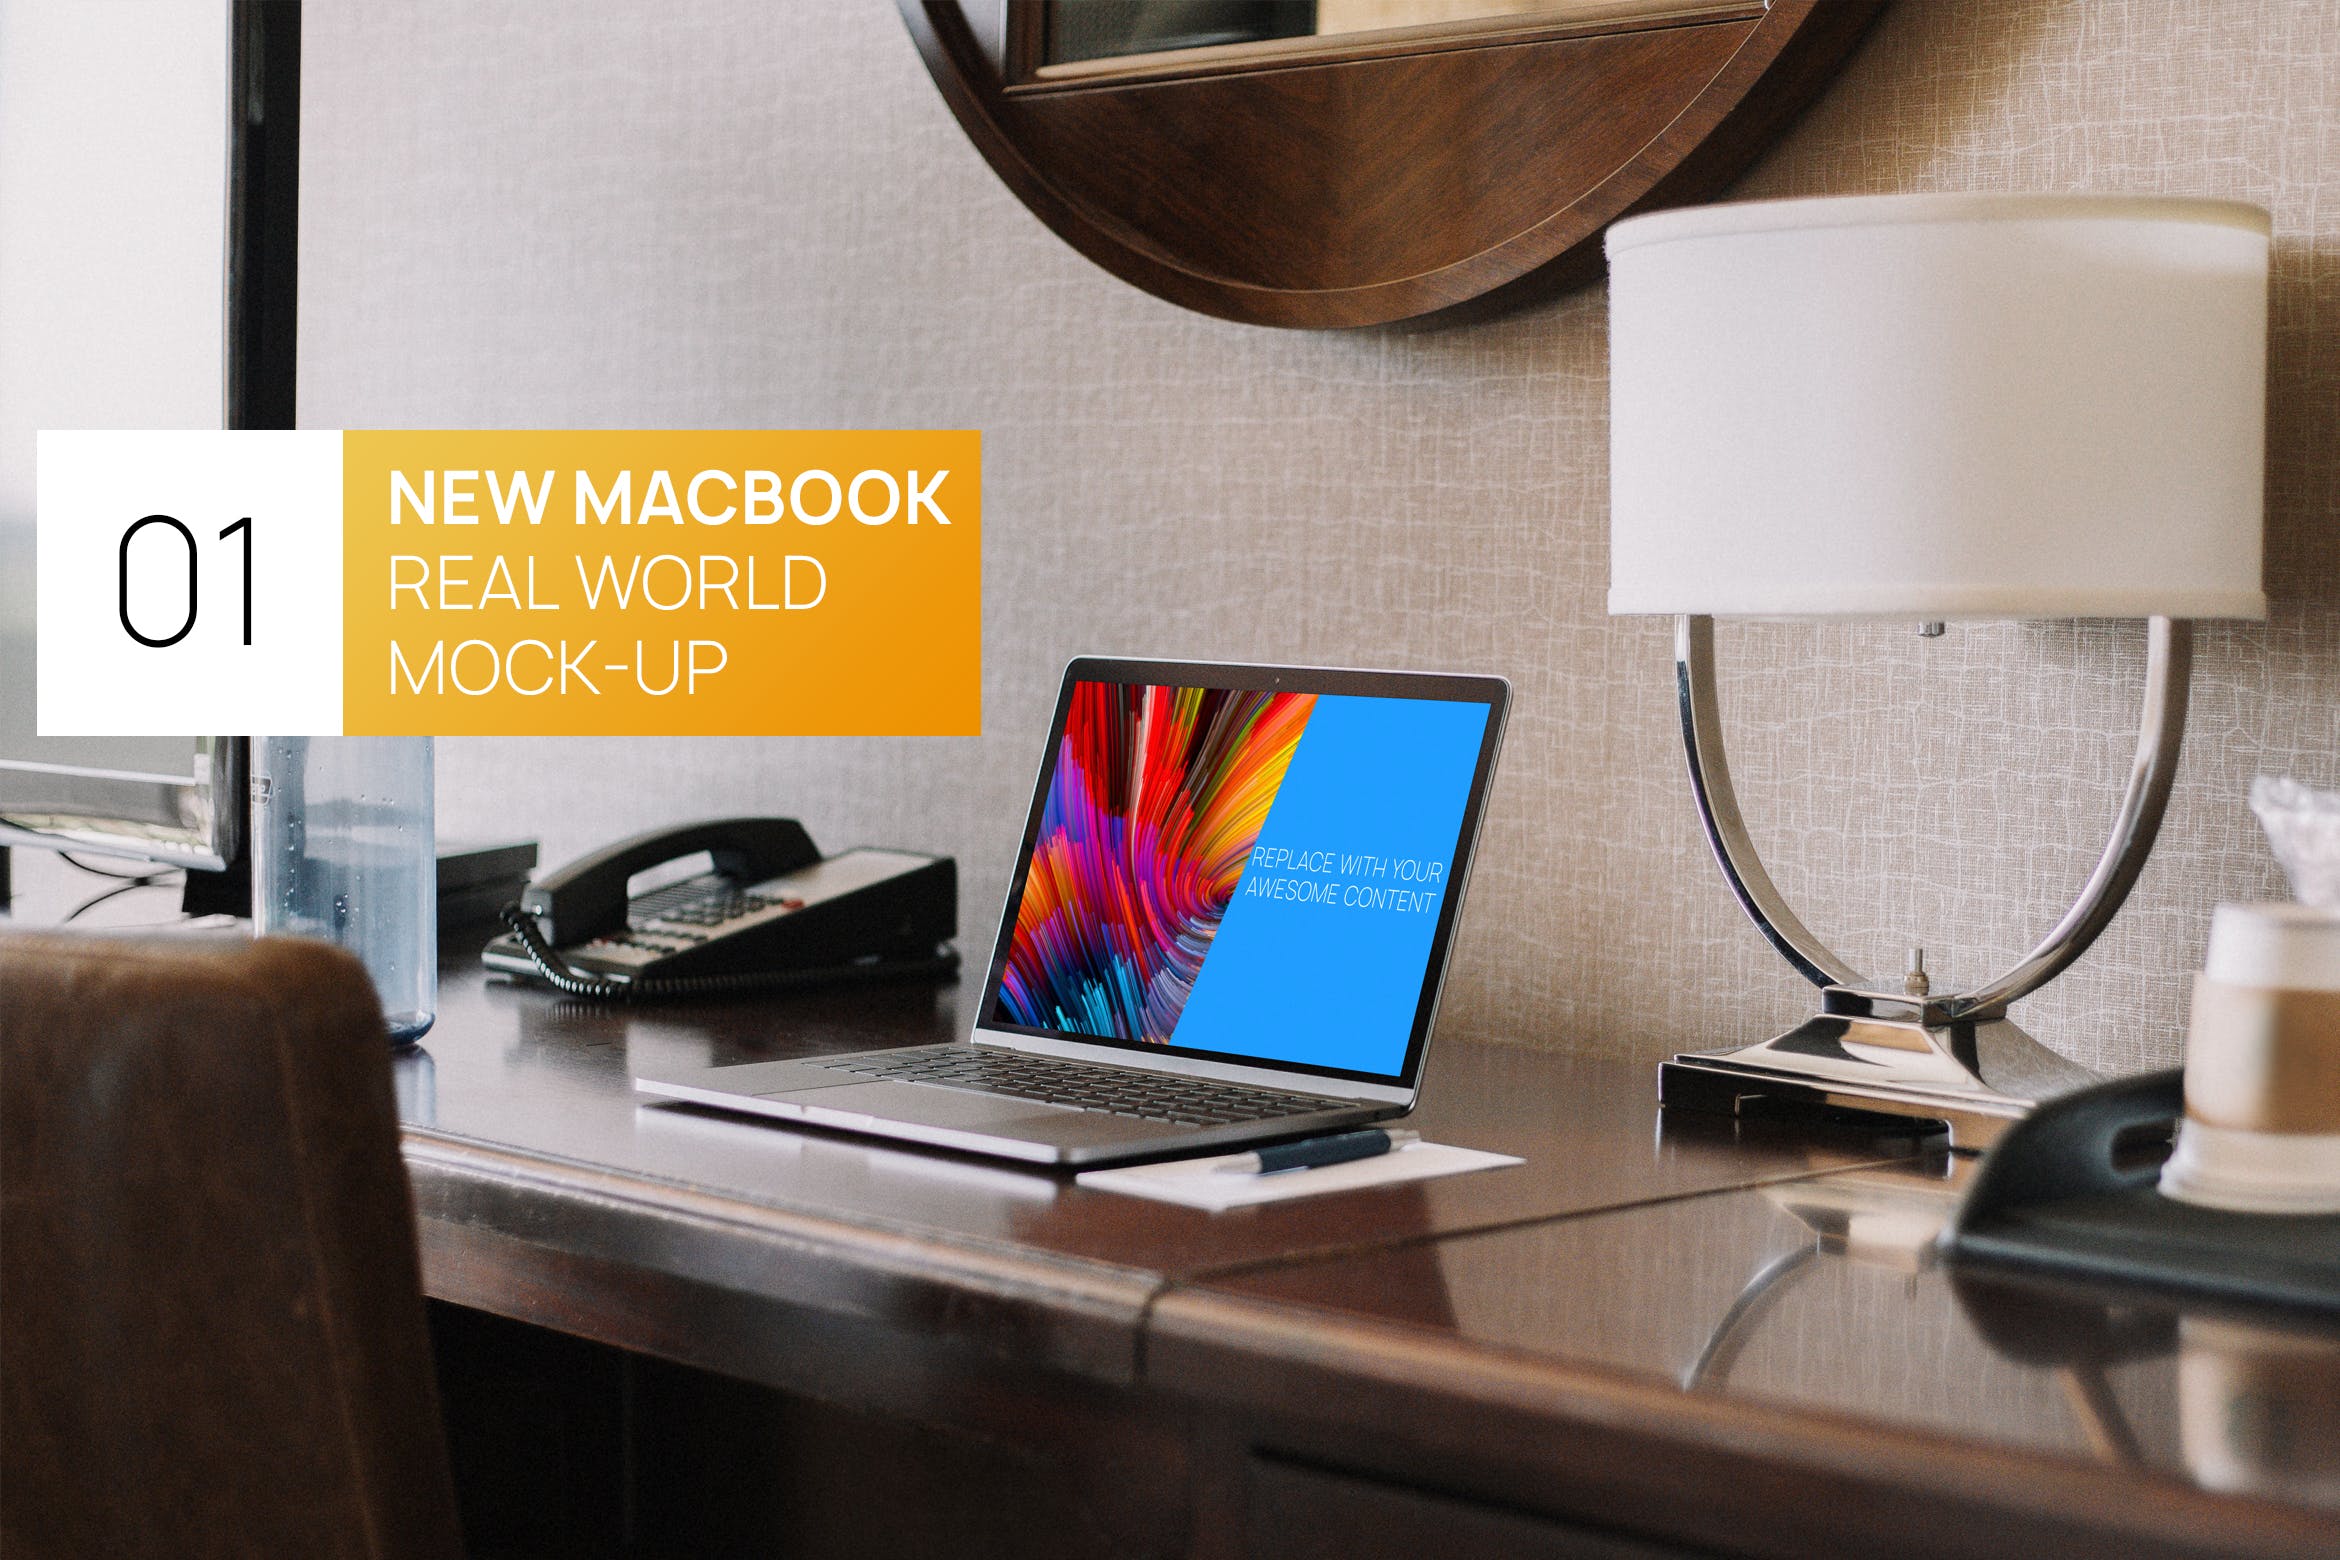 居家卧室桌面场景13寸MacBook电脑16设计网精选样机 New Macbook 13 Interior Real World Photo Mock-up插图